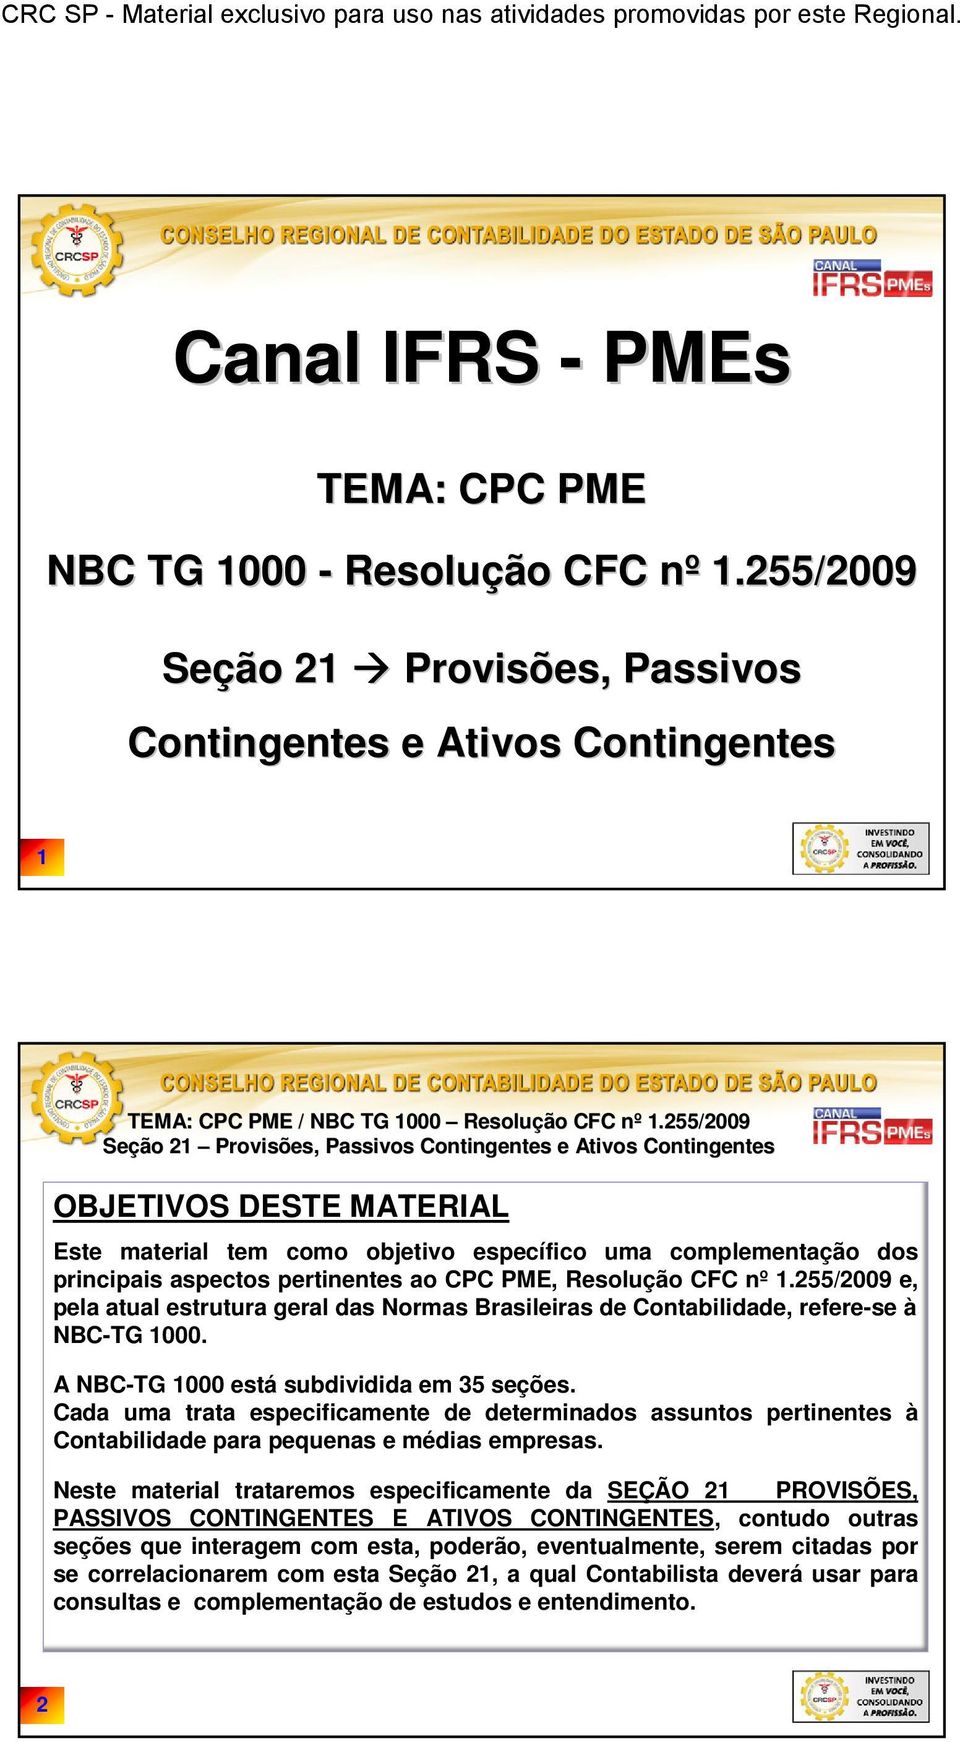 ao CPC PME, Resolução CFC nº 1.255/2009 e, pela atual estrutura geral das Normas Brasileiras de Contabilidade, refere-se à NBC-TG 1000. A NBC-TG 1000 está subdividida em 35 seções.